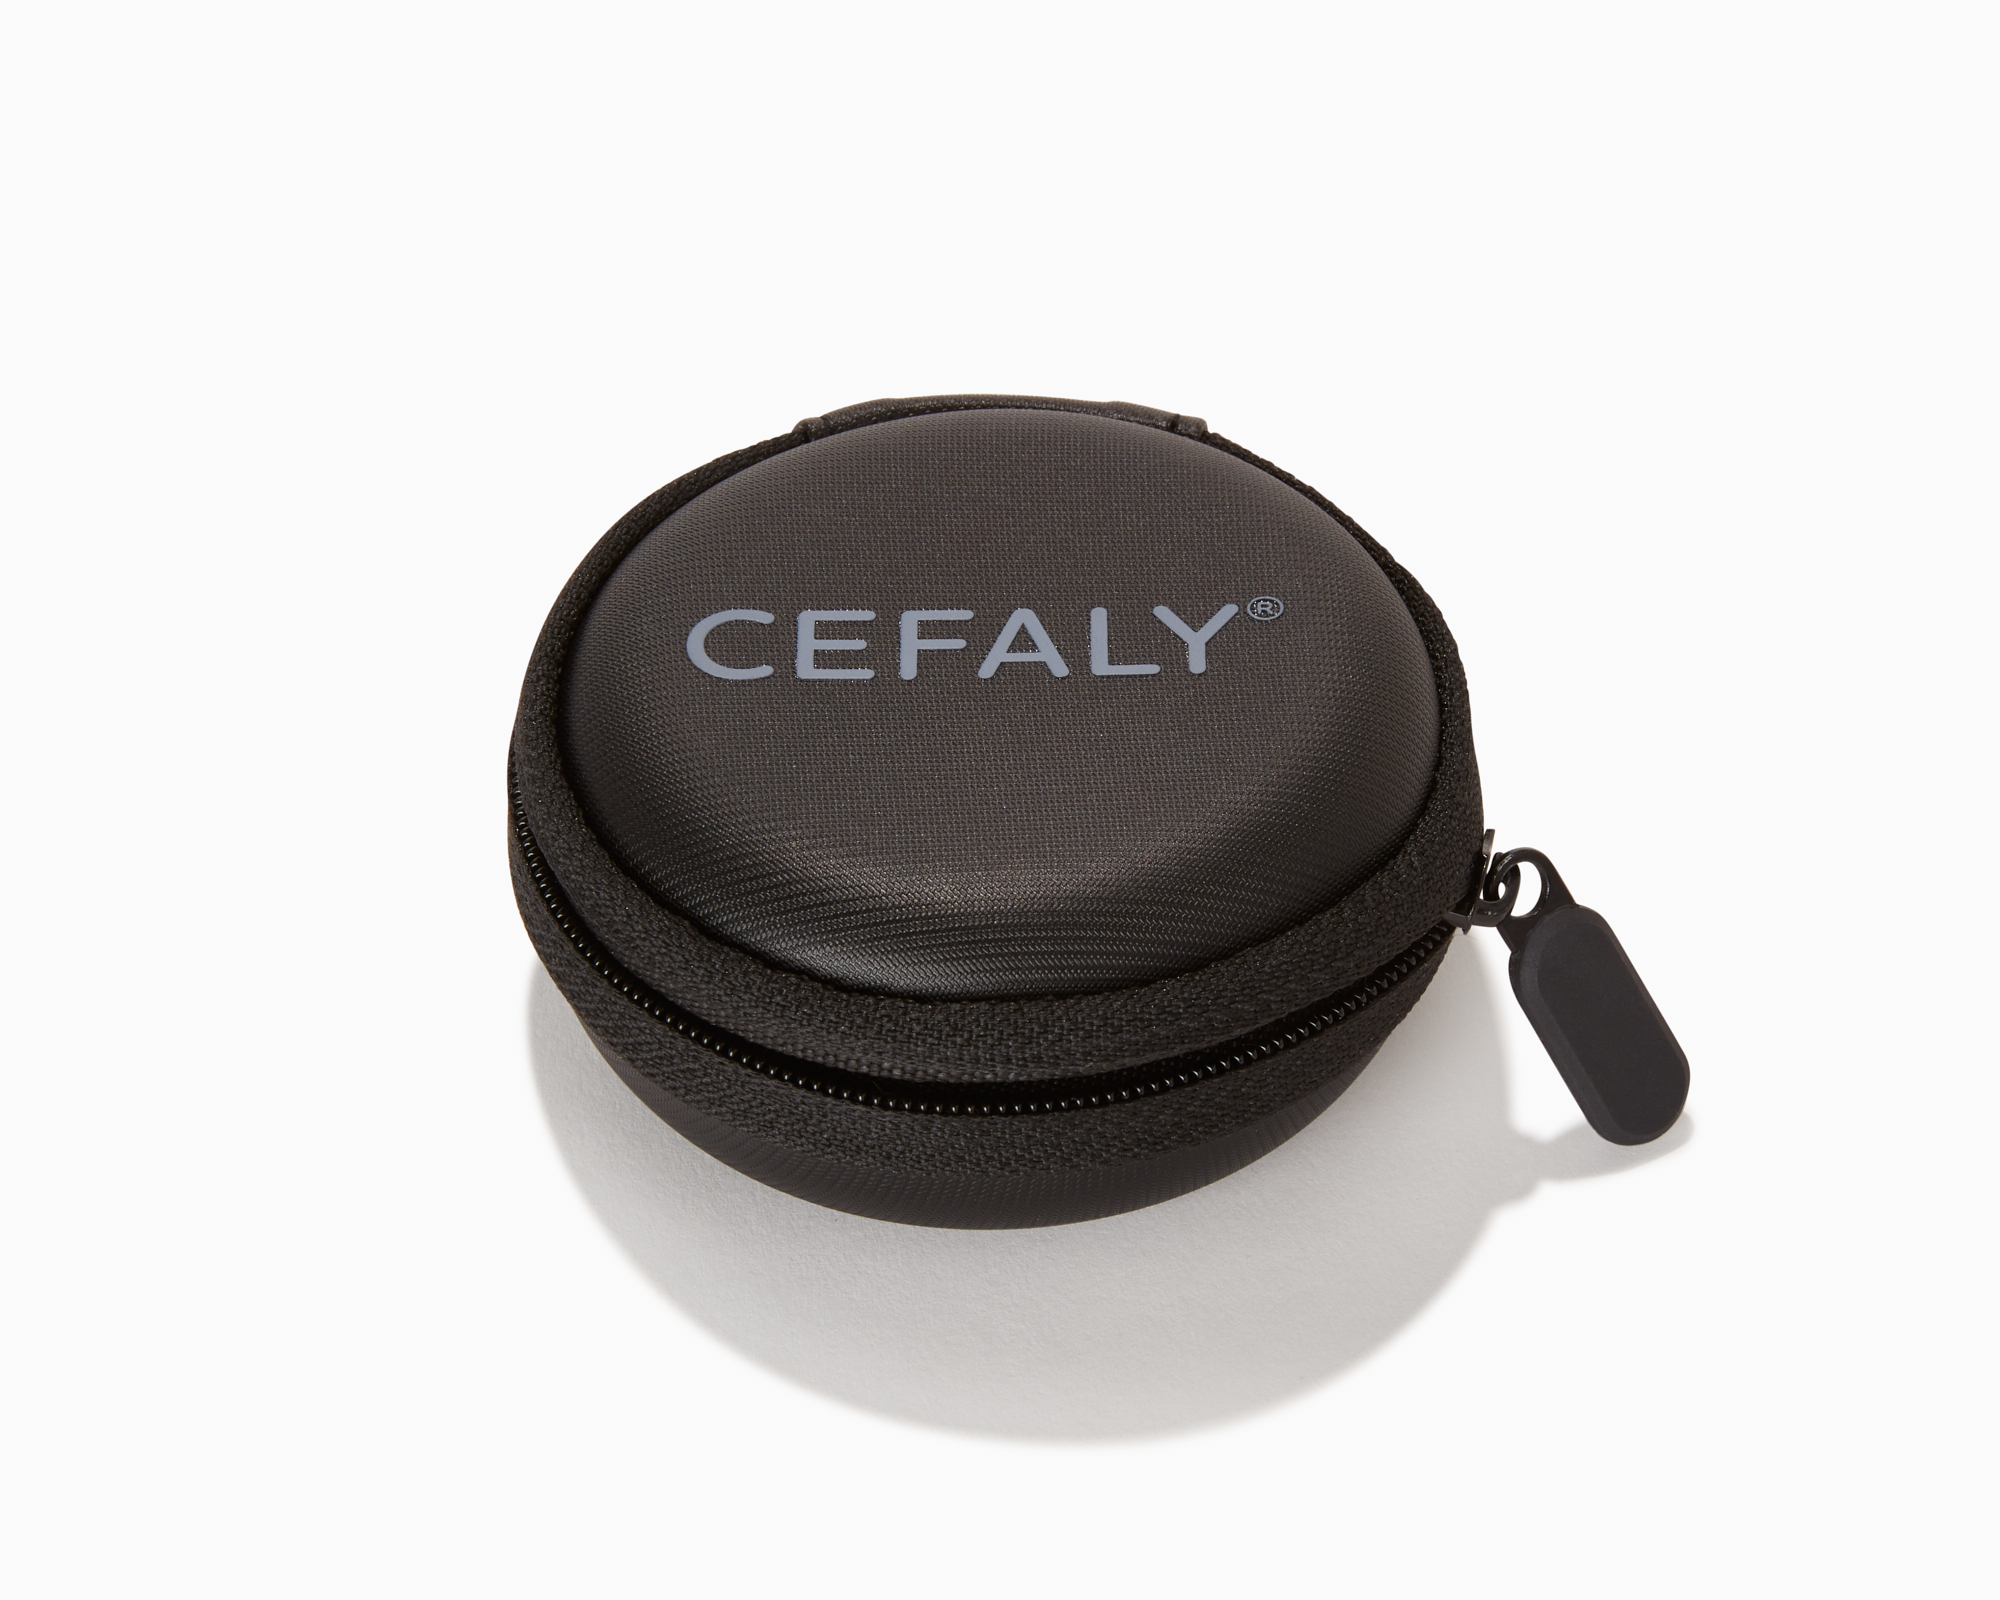 Foto del dispositivo CEFALY para el tratamiento y la prevención de migrañas sin electrodo 2